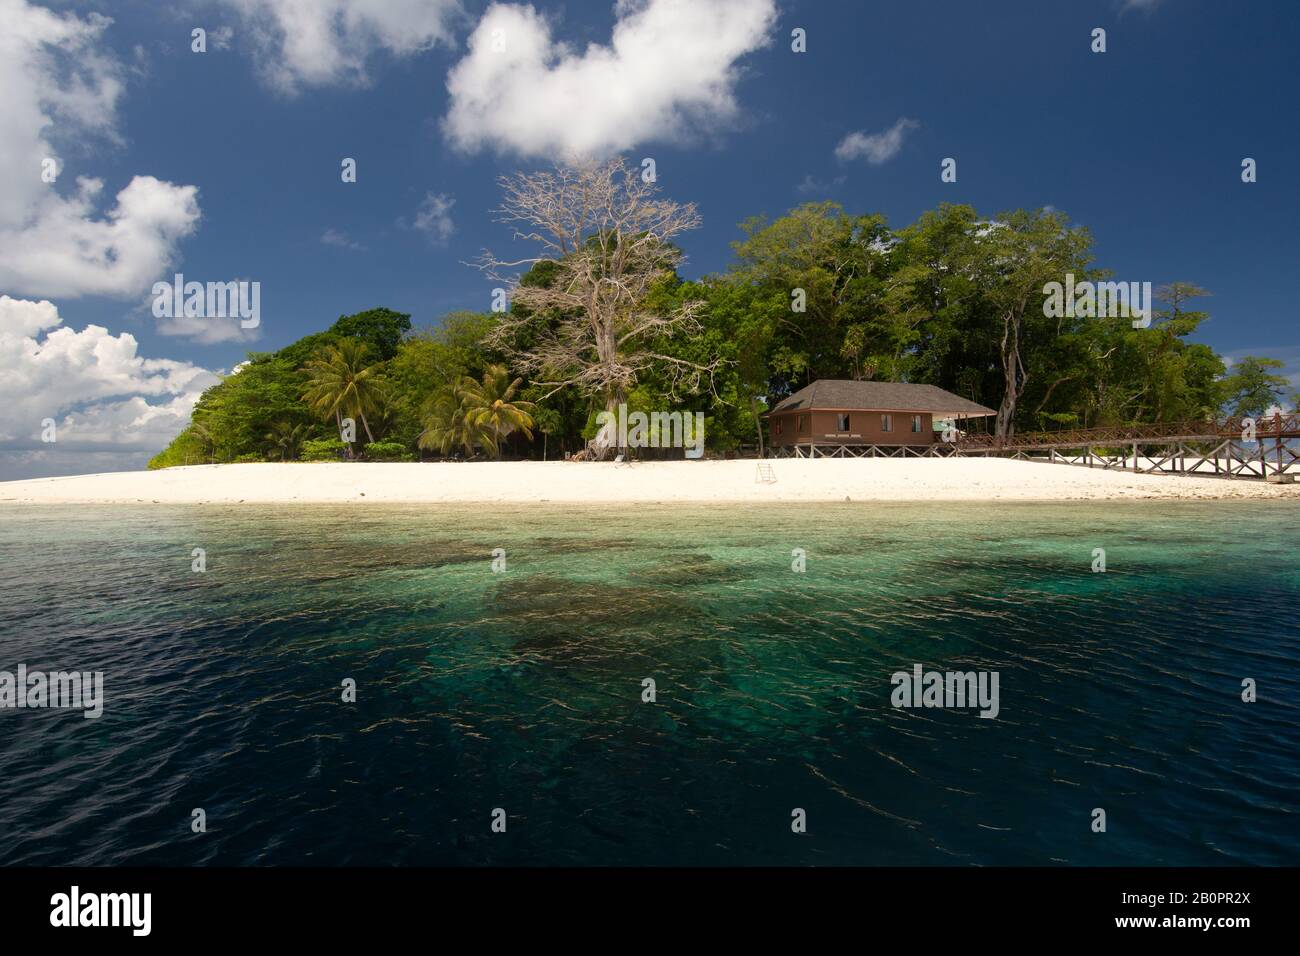 Plage de sable blanc de l'île de Sipadan, Sabah, Malaisie, mer de Celebes Banque D'Images